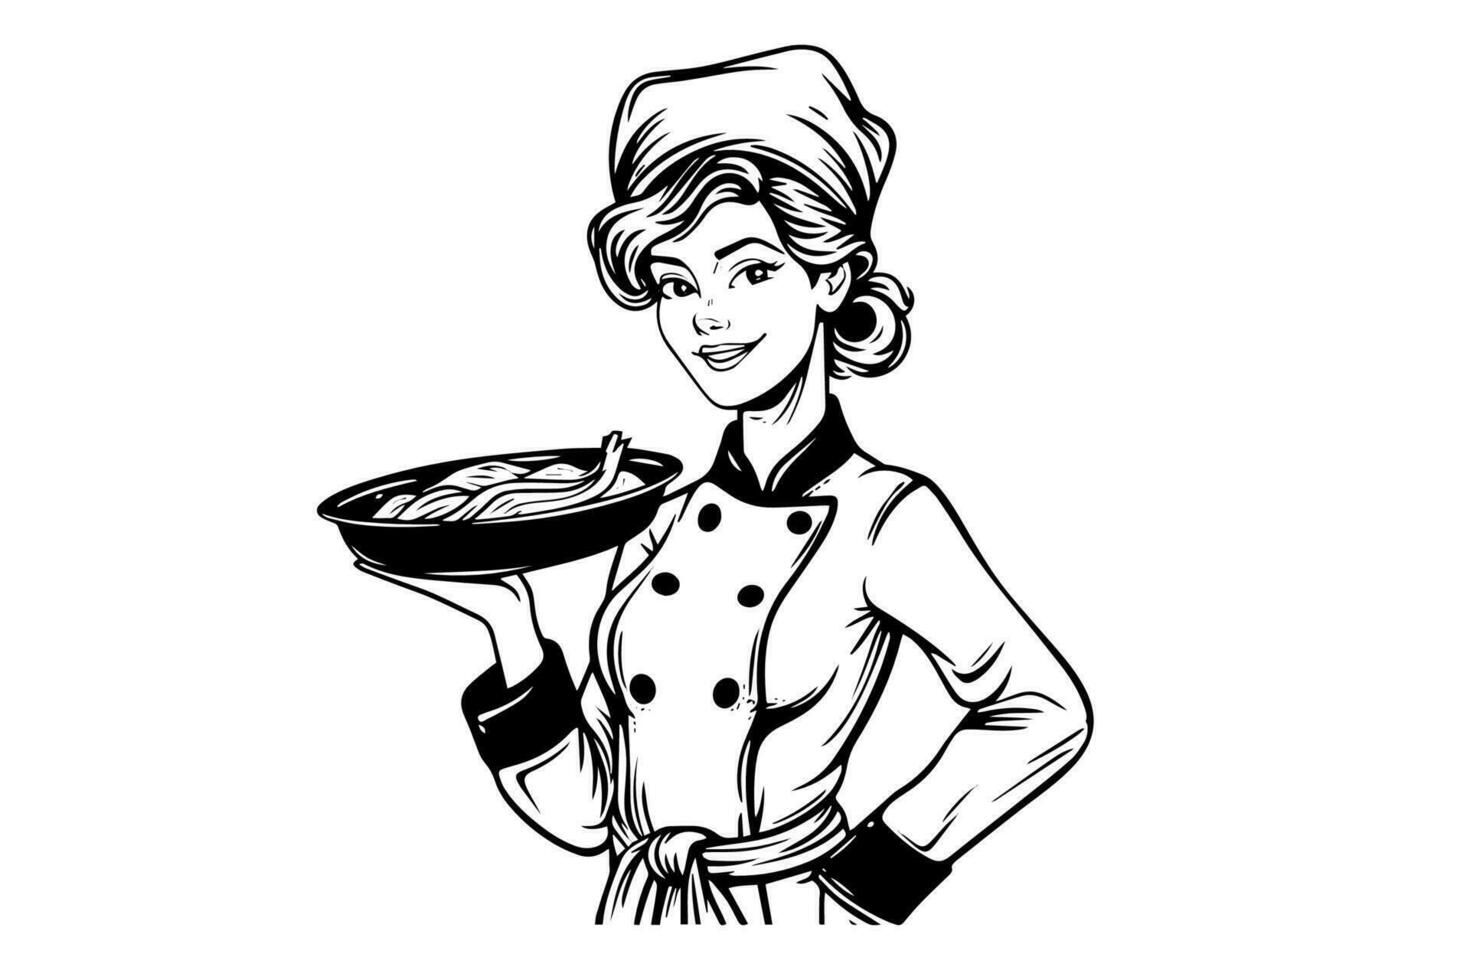 risonho mulher chefe de cozinha tinta esboço dentro gravação estilo. desenhando jovem fêmea vetor ilustração.